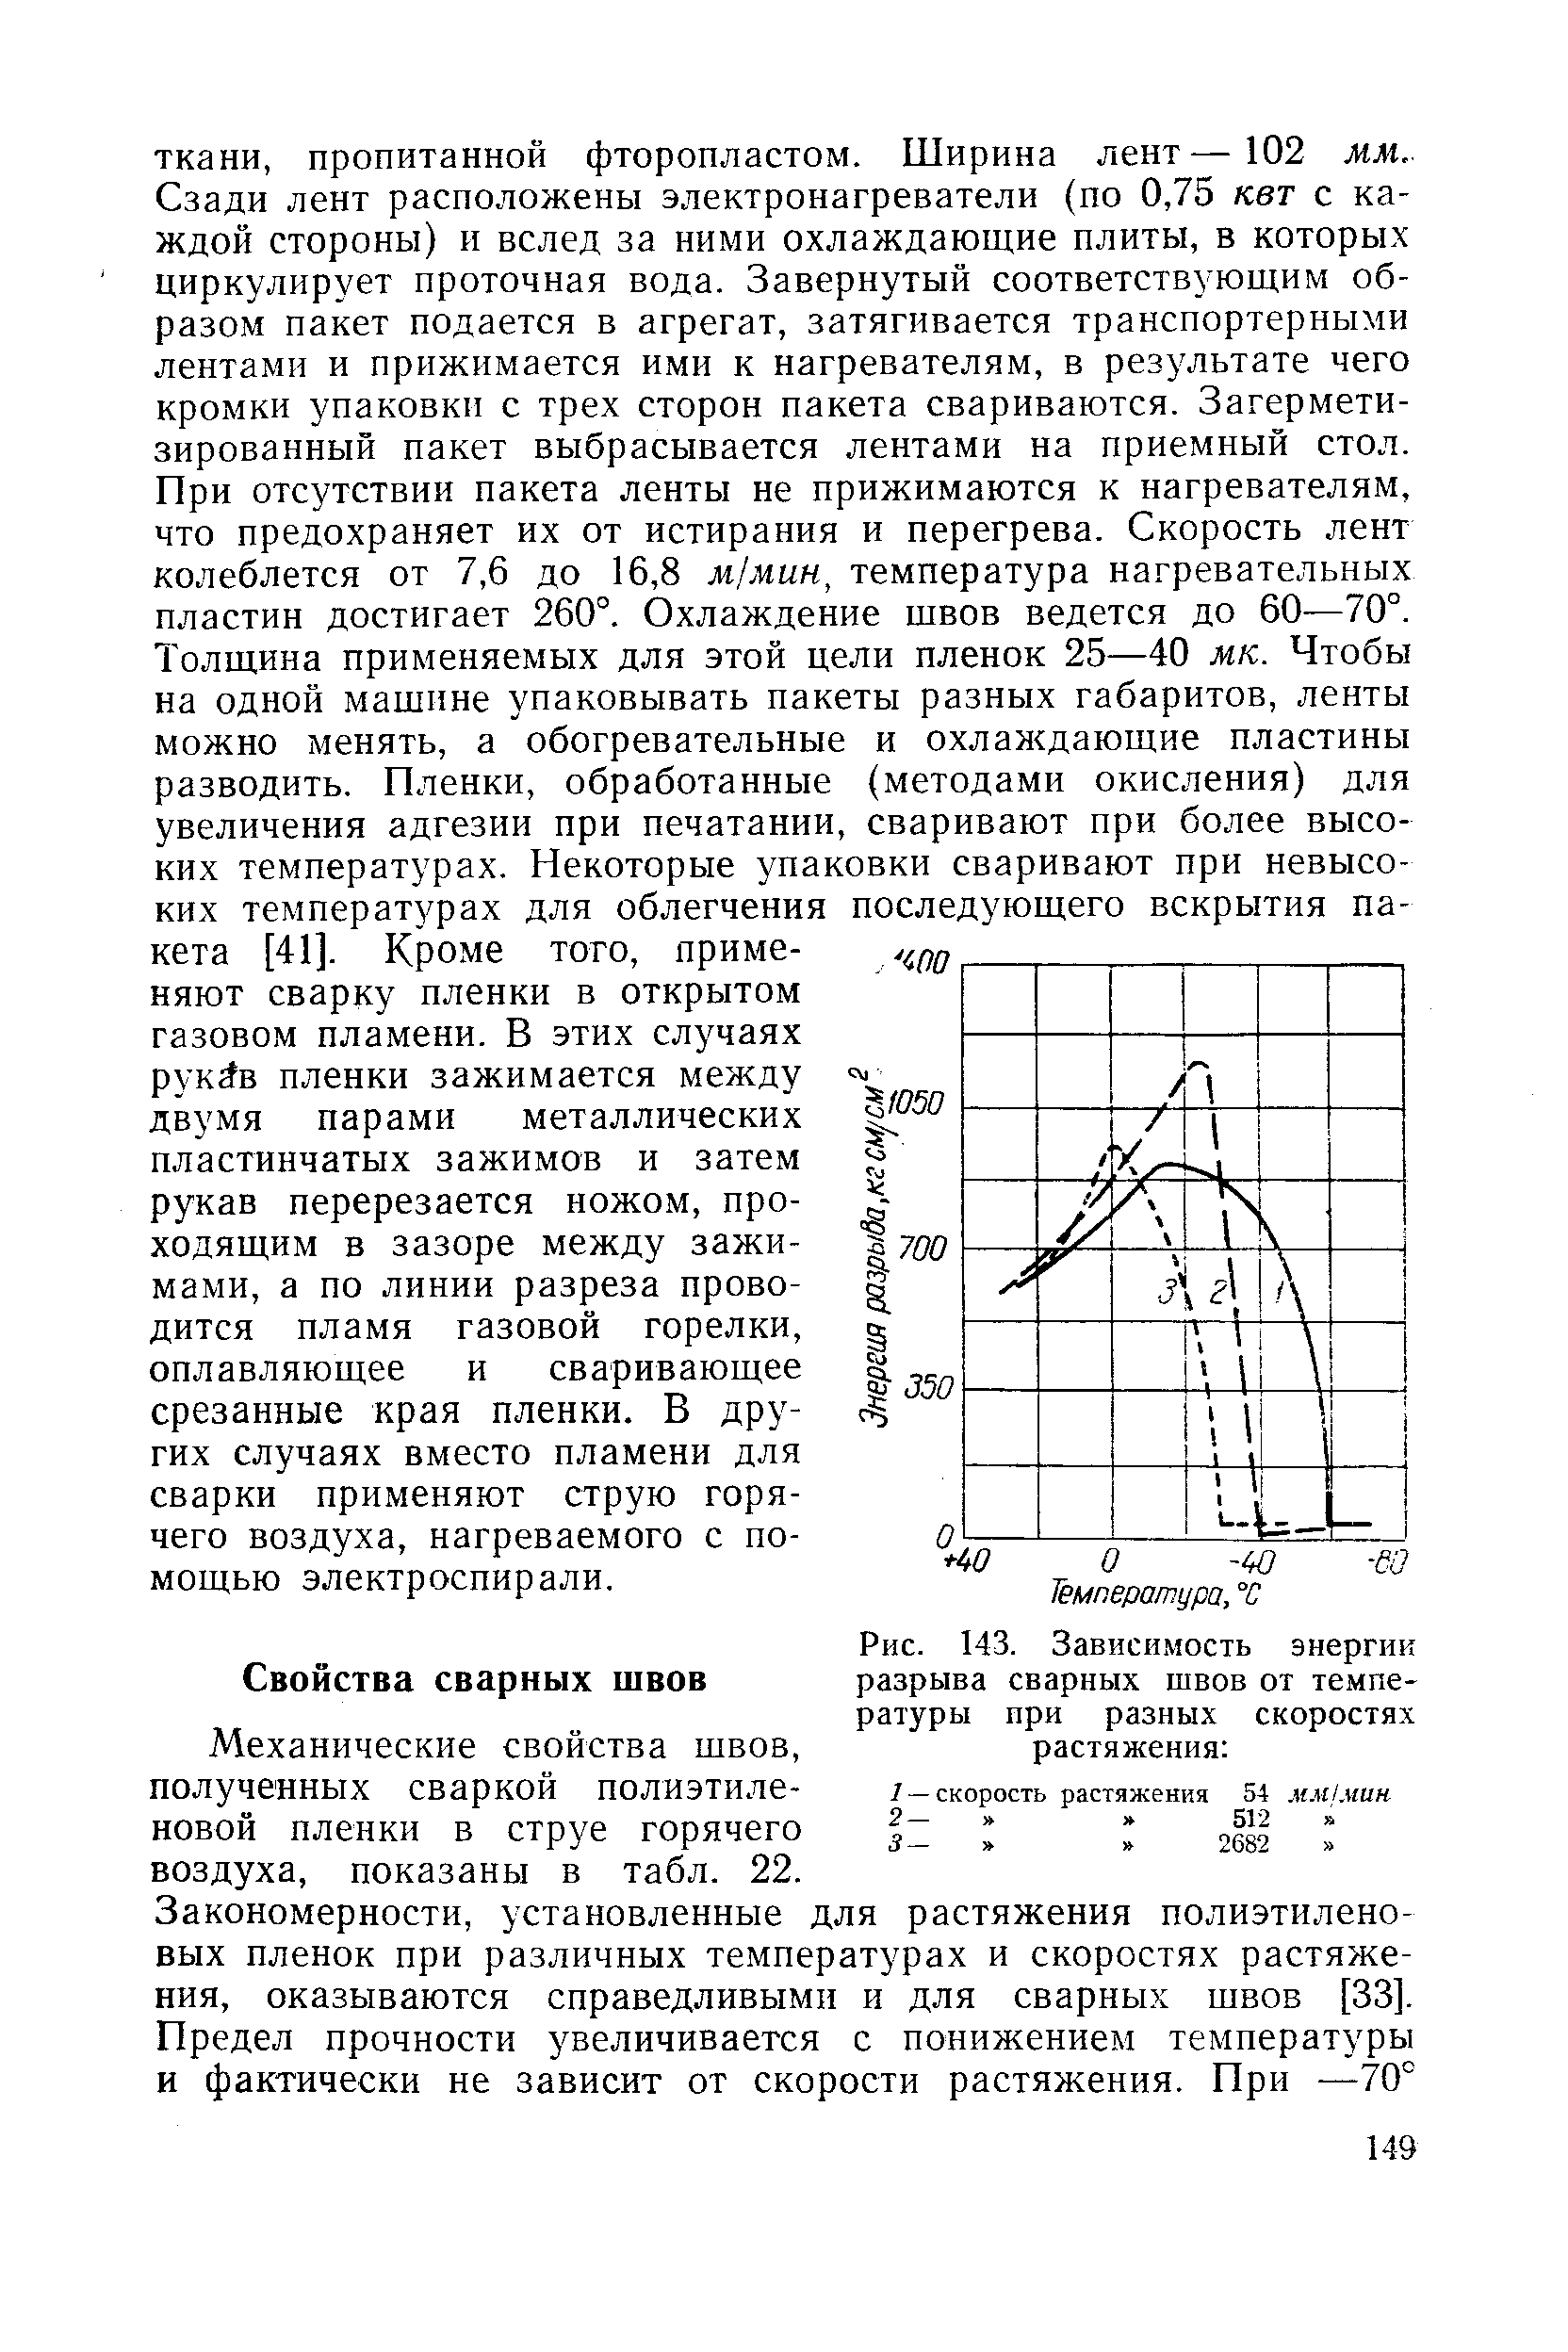 Механические свойства швов, полученных сваркой полиэтиленовой пленки в струе горячего воздуха, показаны в табл. 22.